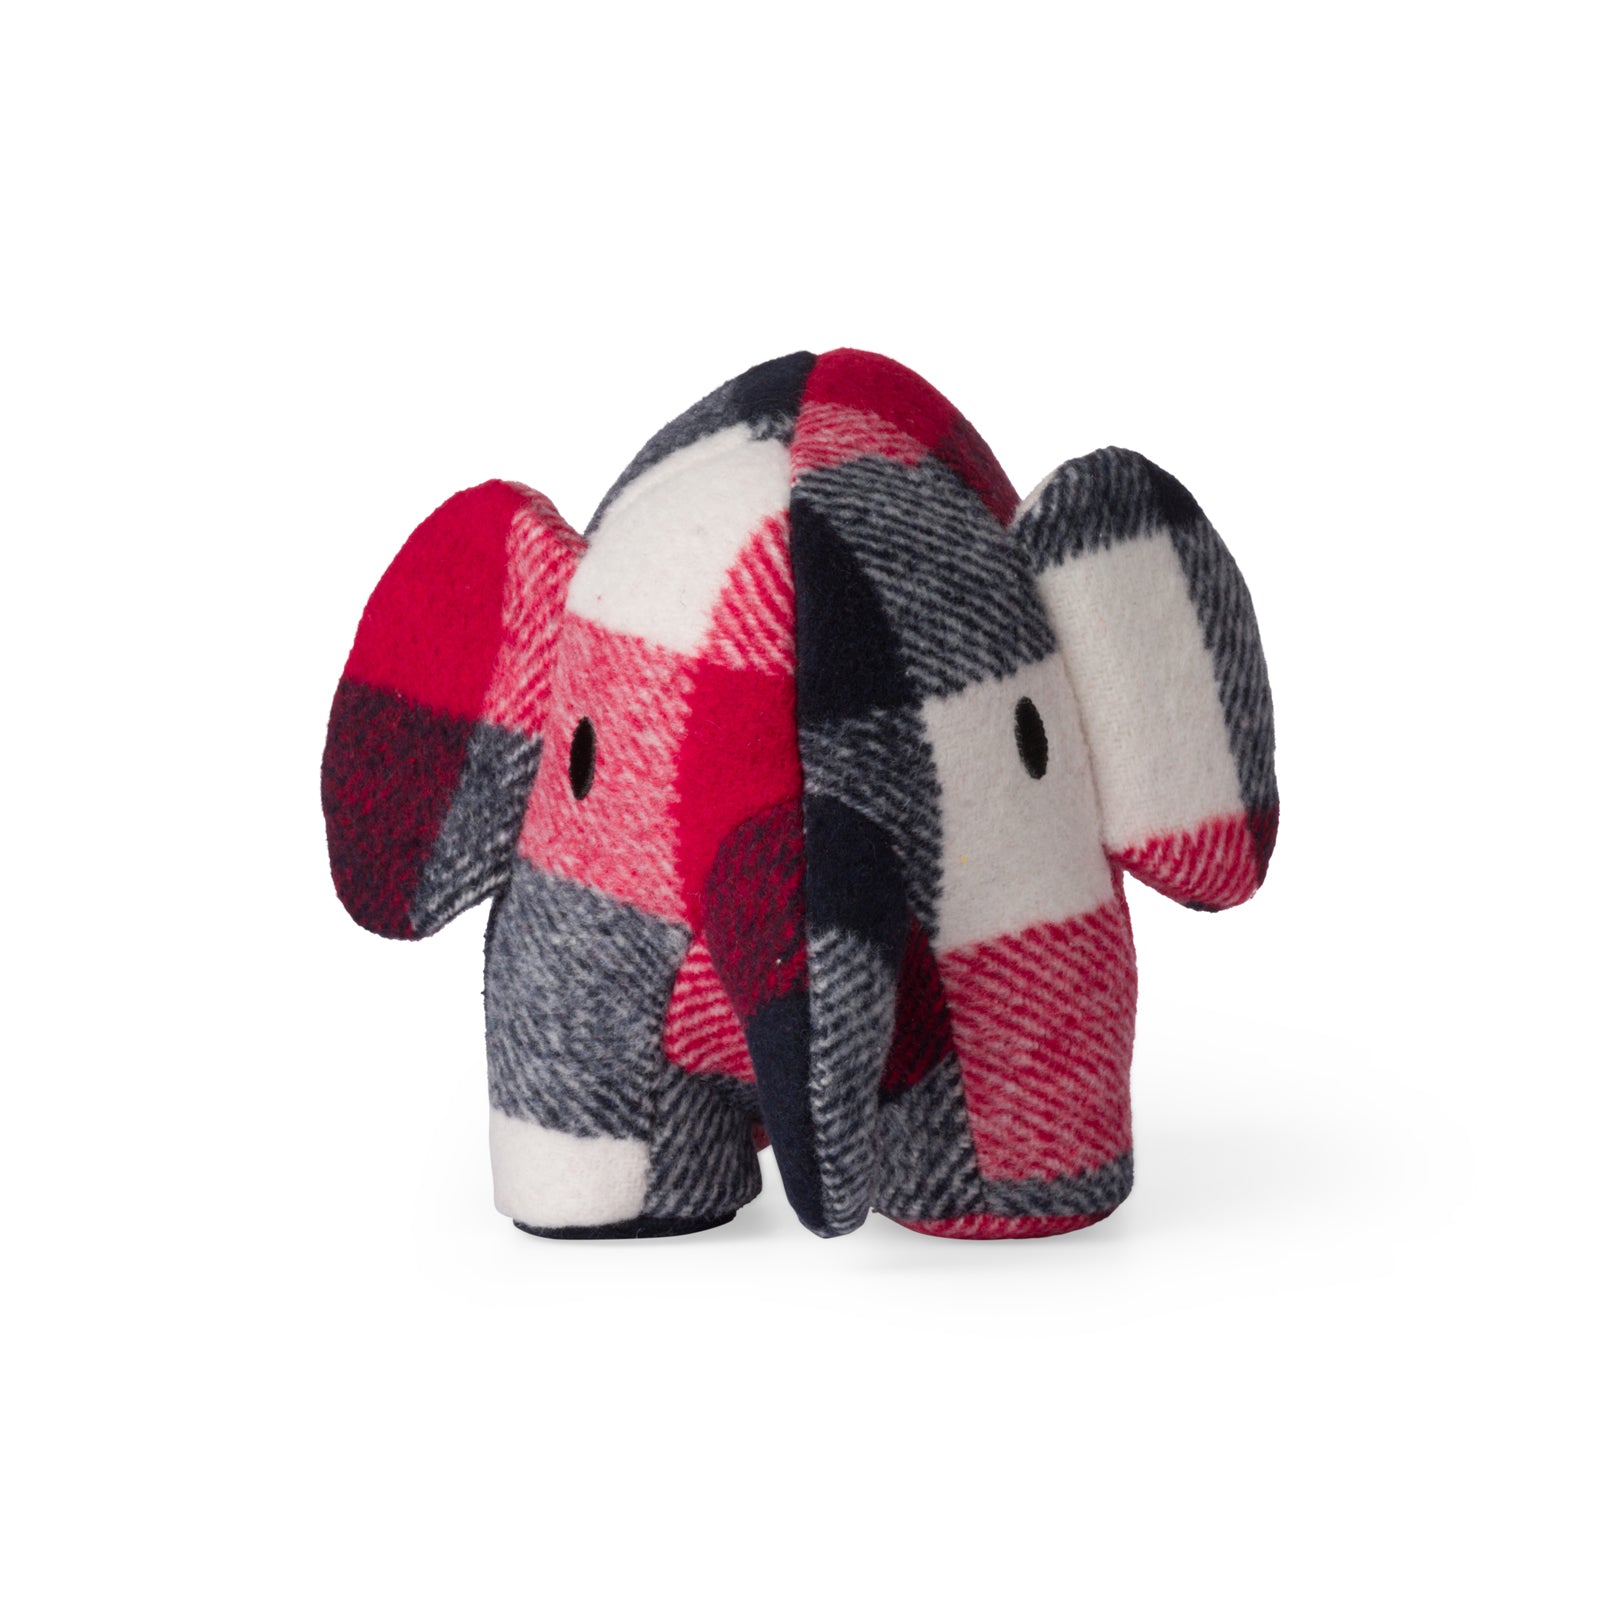 Elefant în carouri roșii și albastre, 33 cm